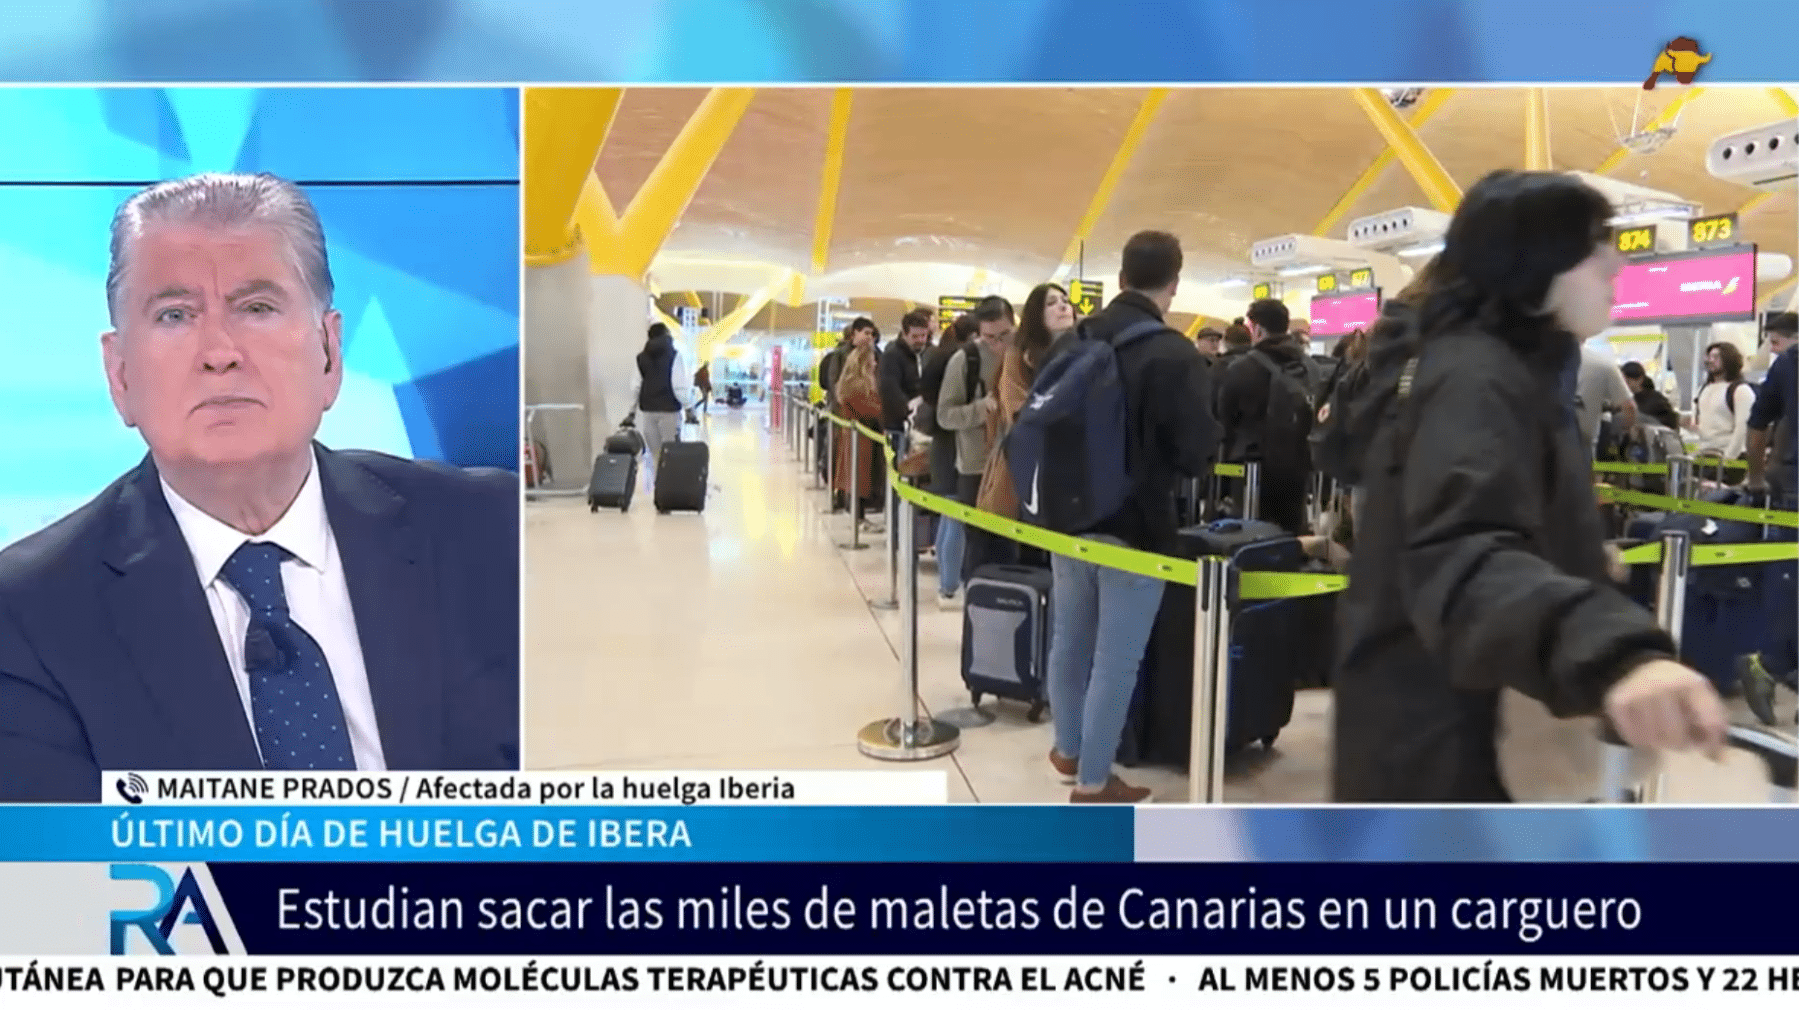  Indignación entre los pasajeros afectados por la huelga de Iberia: «Vimos miles de maletas mezcladas, algunas abiertas y rotas»